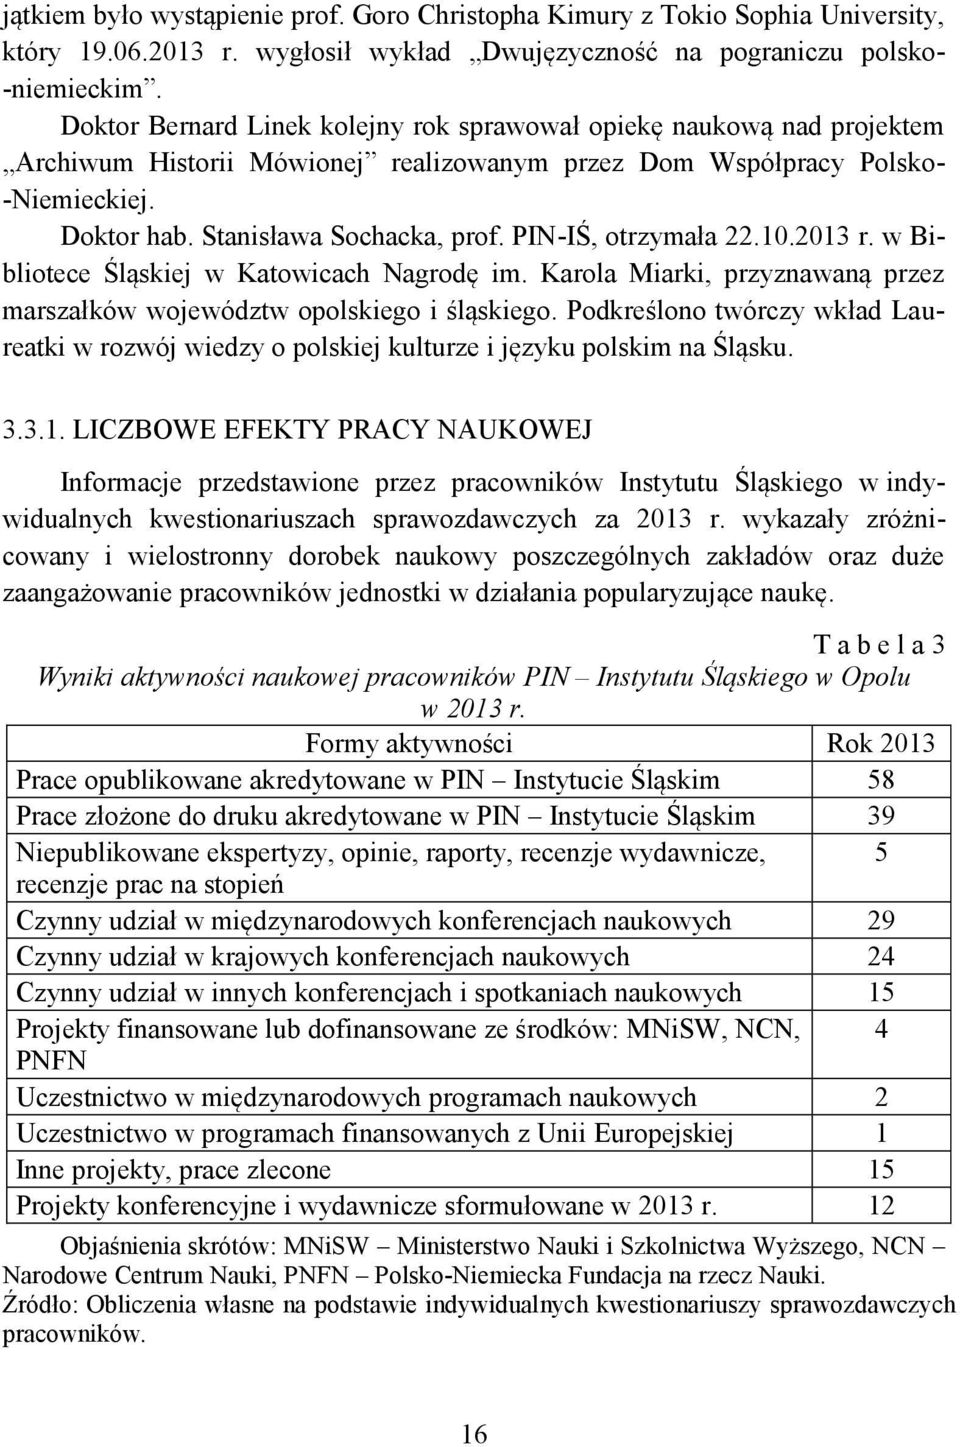 PIN-IŚ, otrzymała 22.10.2013 r. w Bibliotece Śląskiej w Katowicach Nagrodę im. Karola Miarki, przyznawaną przez marszałków województw opolskiego i śląskiego.